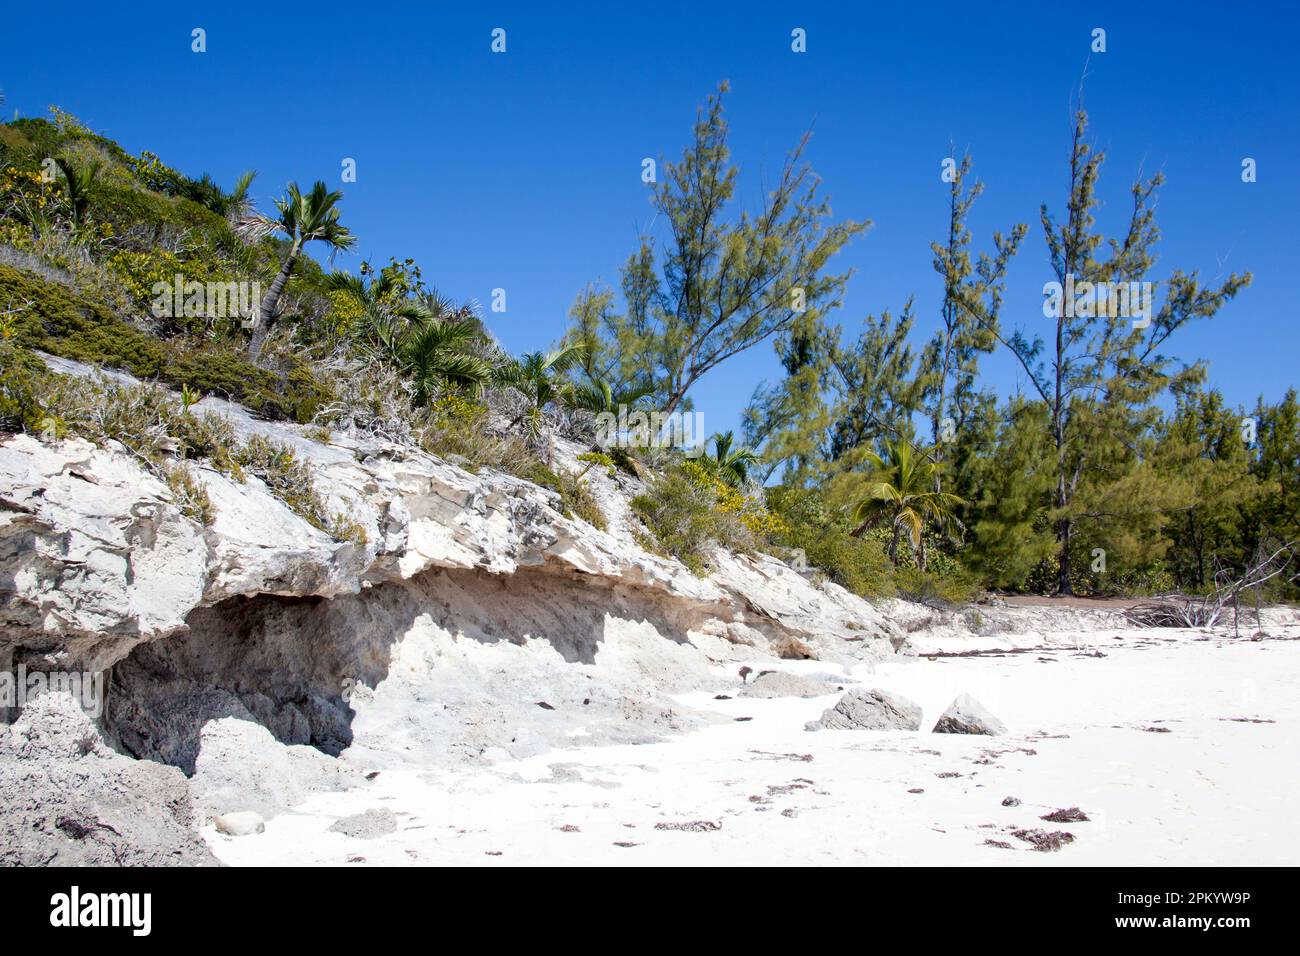 La vista panorámica de los árboles y las rocas erosionadas en la playa de arena de la isla Half Moon Cay (Bahamas). Foto de stock